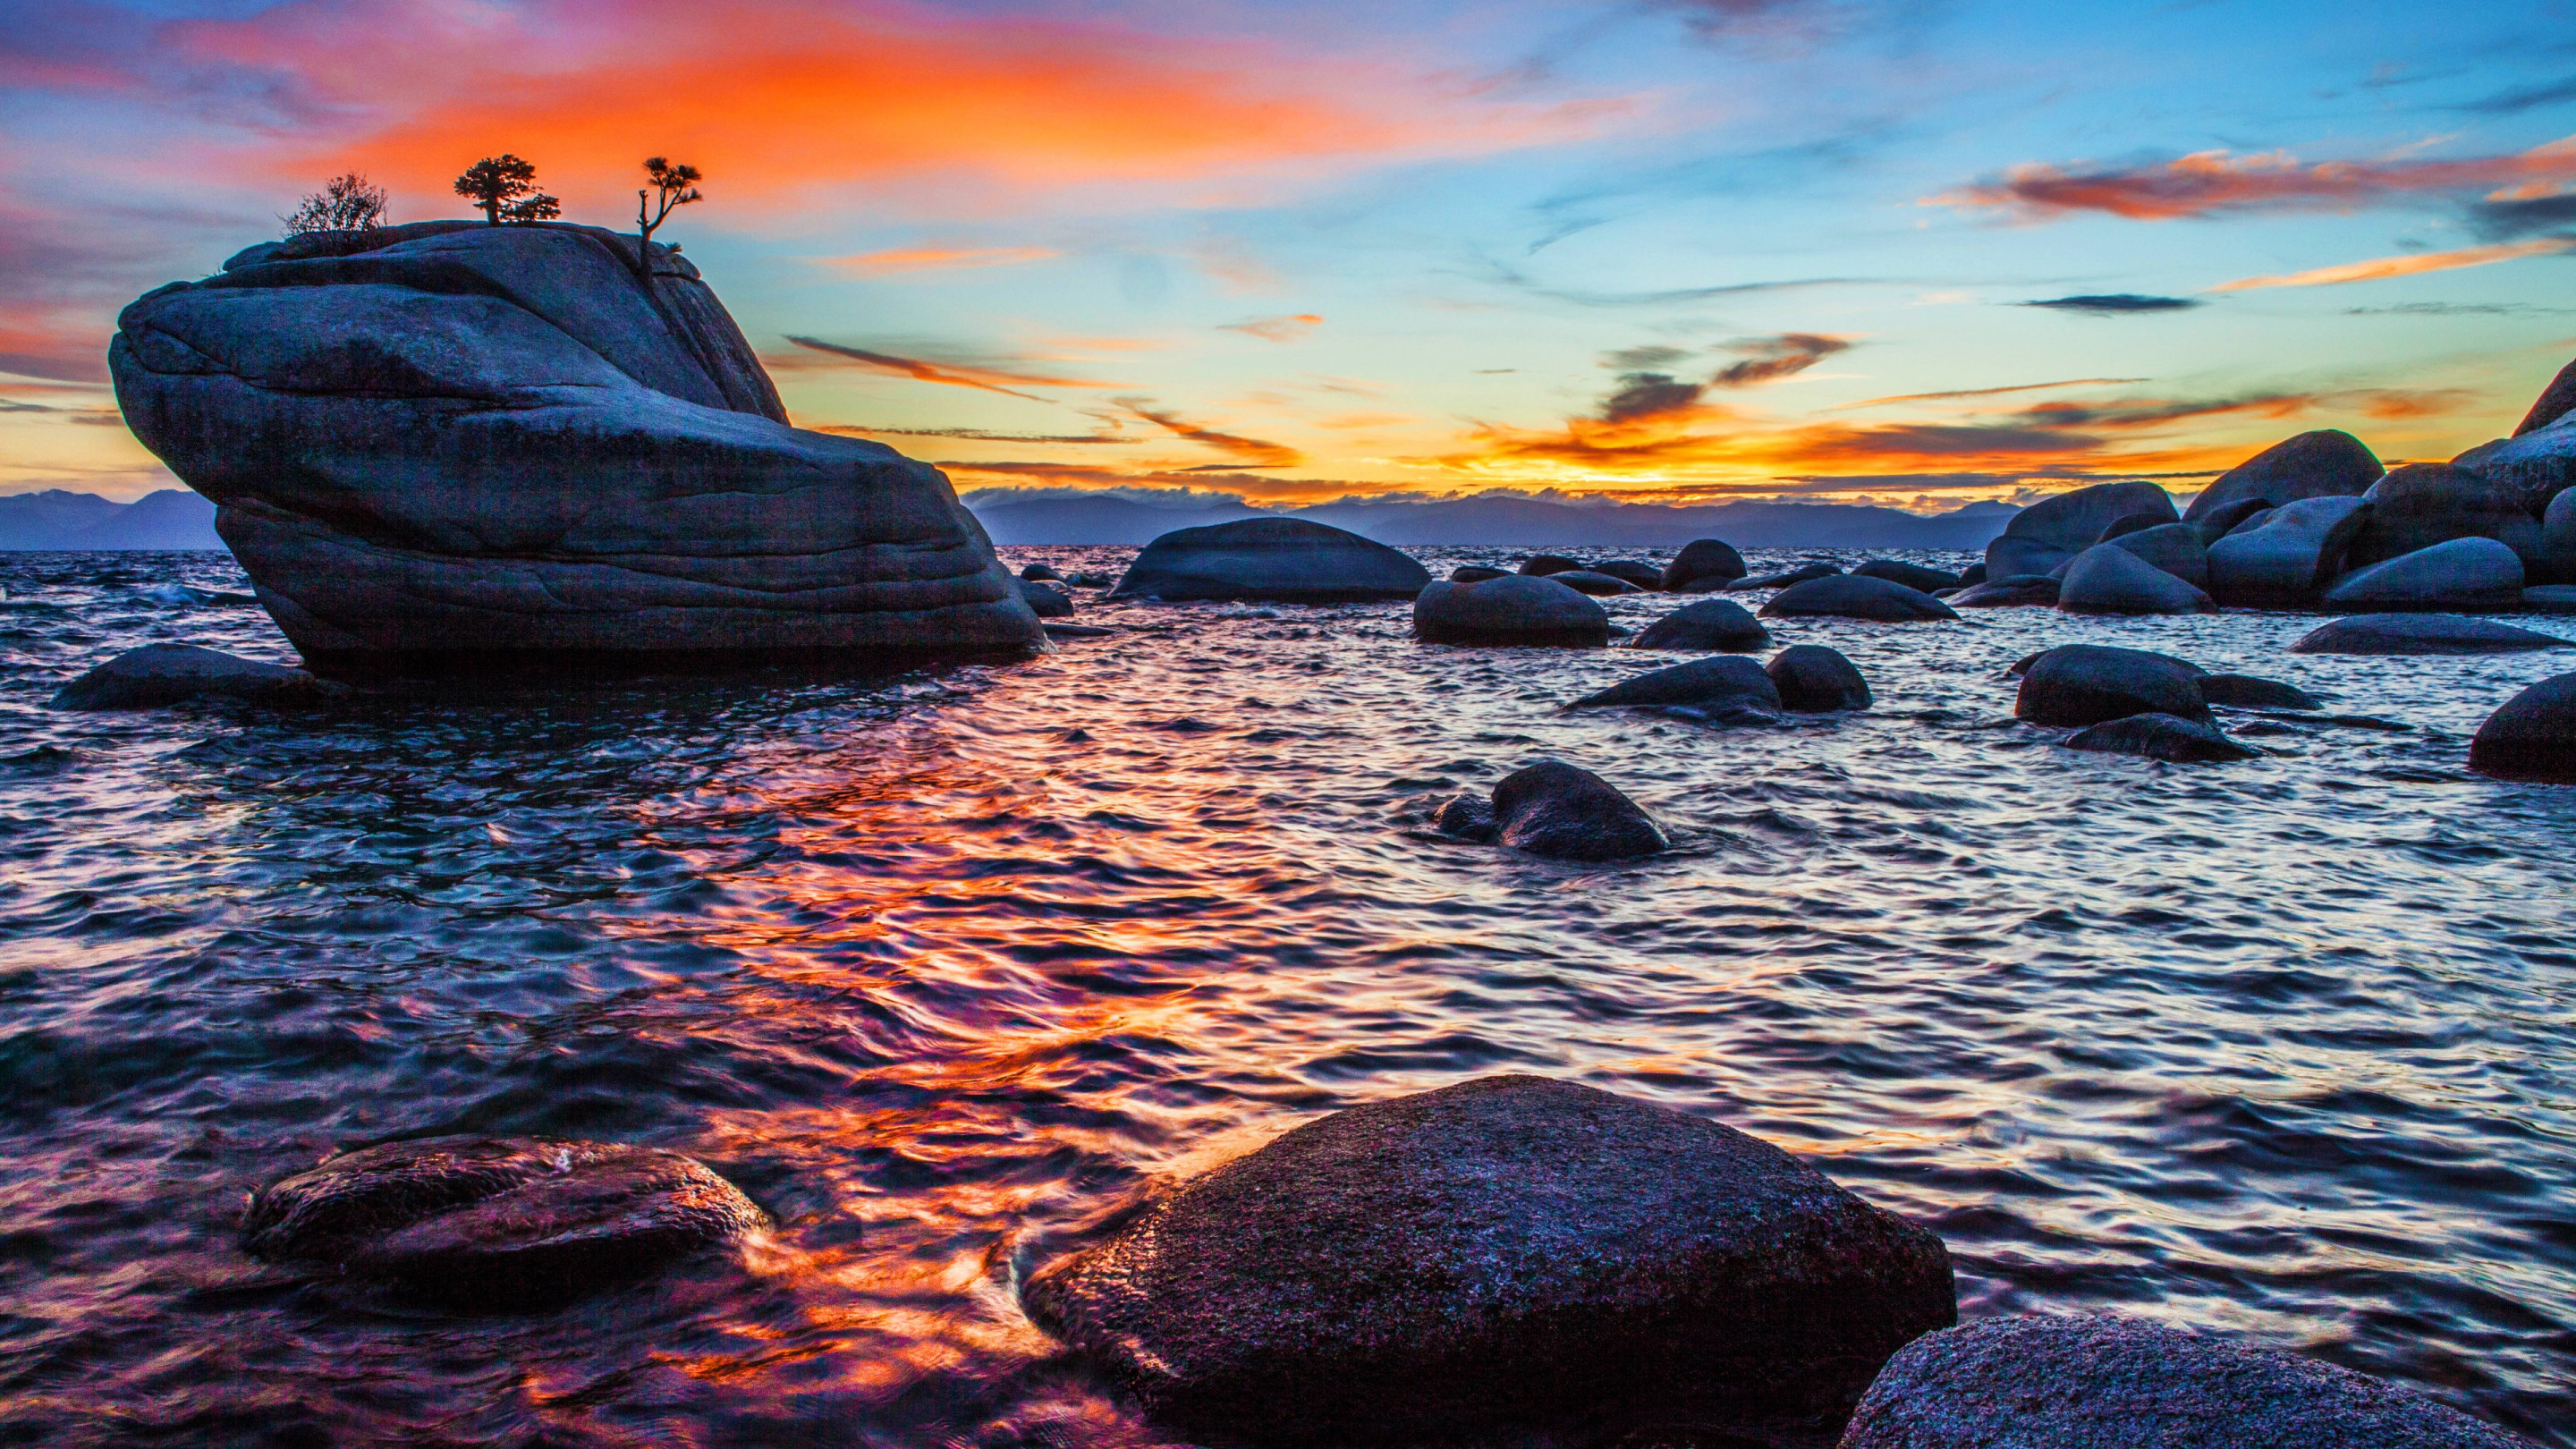 Bonsai Rock sunset at Lake Tahoe wallpaper 2880x1620